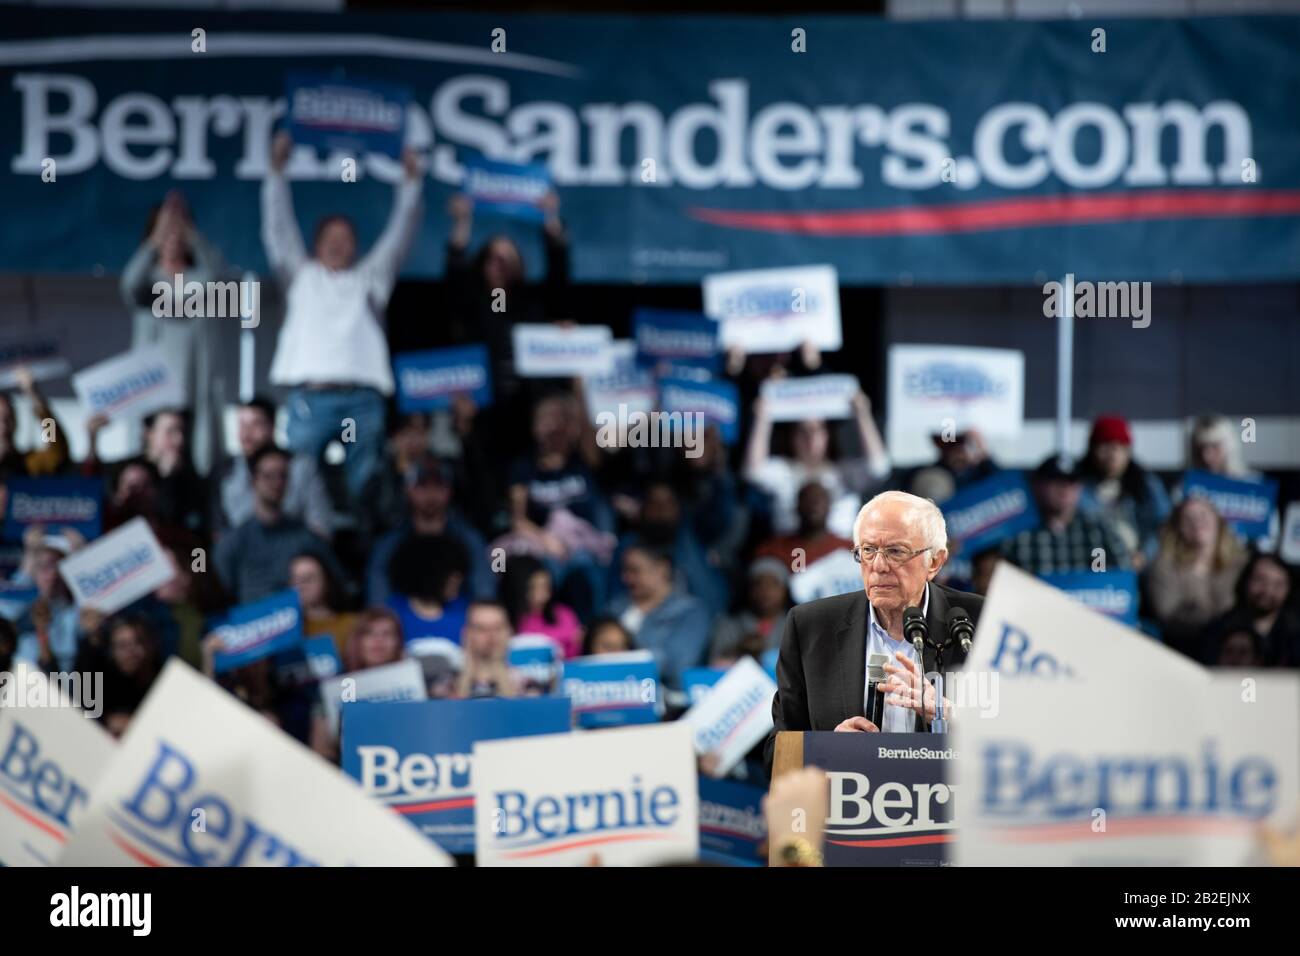 Der demokratische Präsidentschaftskandidat Bernie Sanders bei einer Wahlkampfveranstaltung am Wofford College in South Carolina. Stockfoto